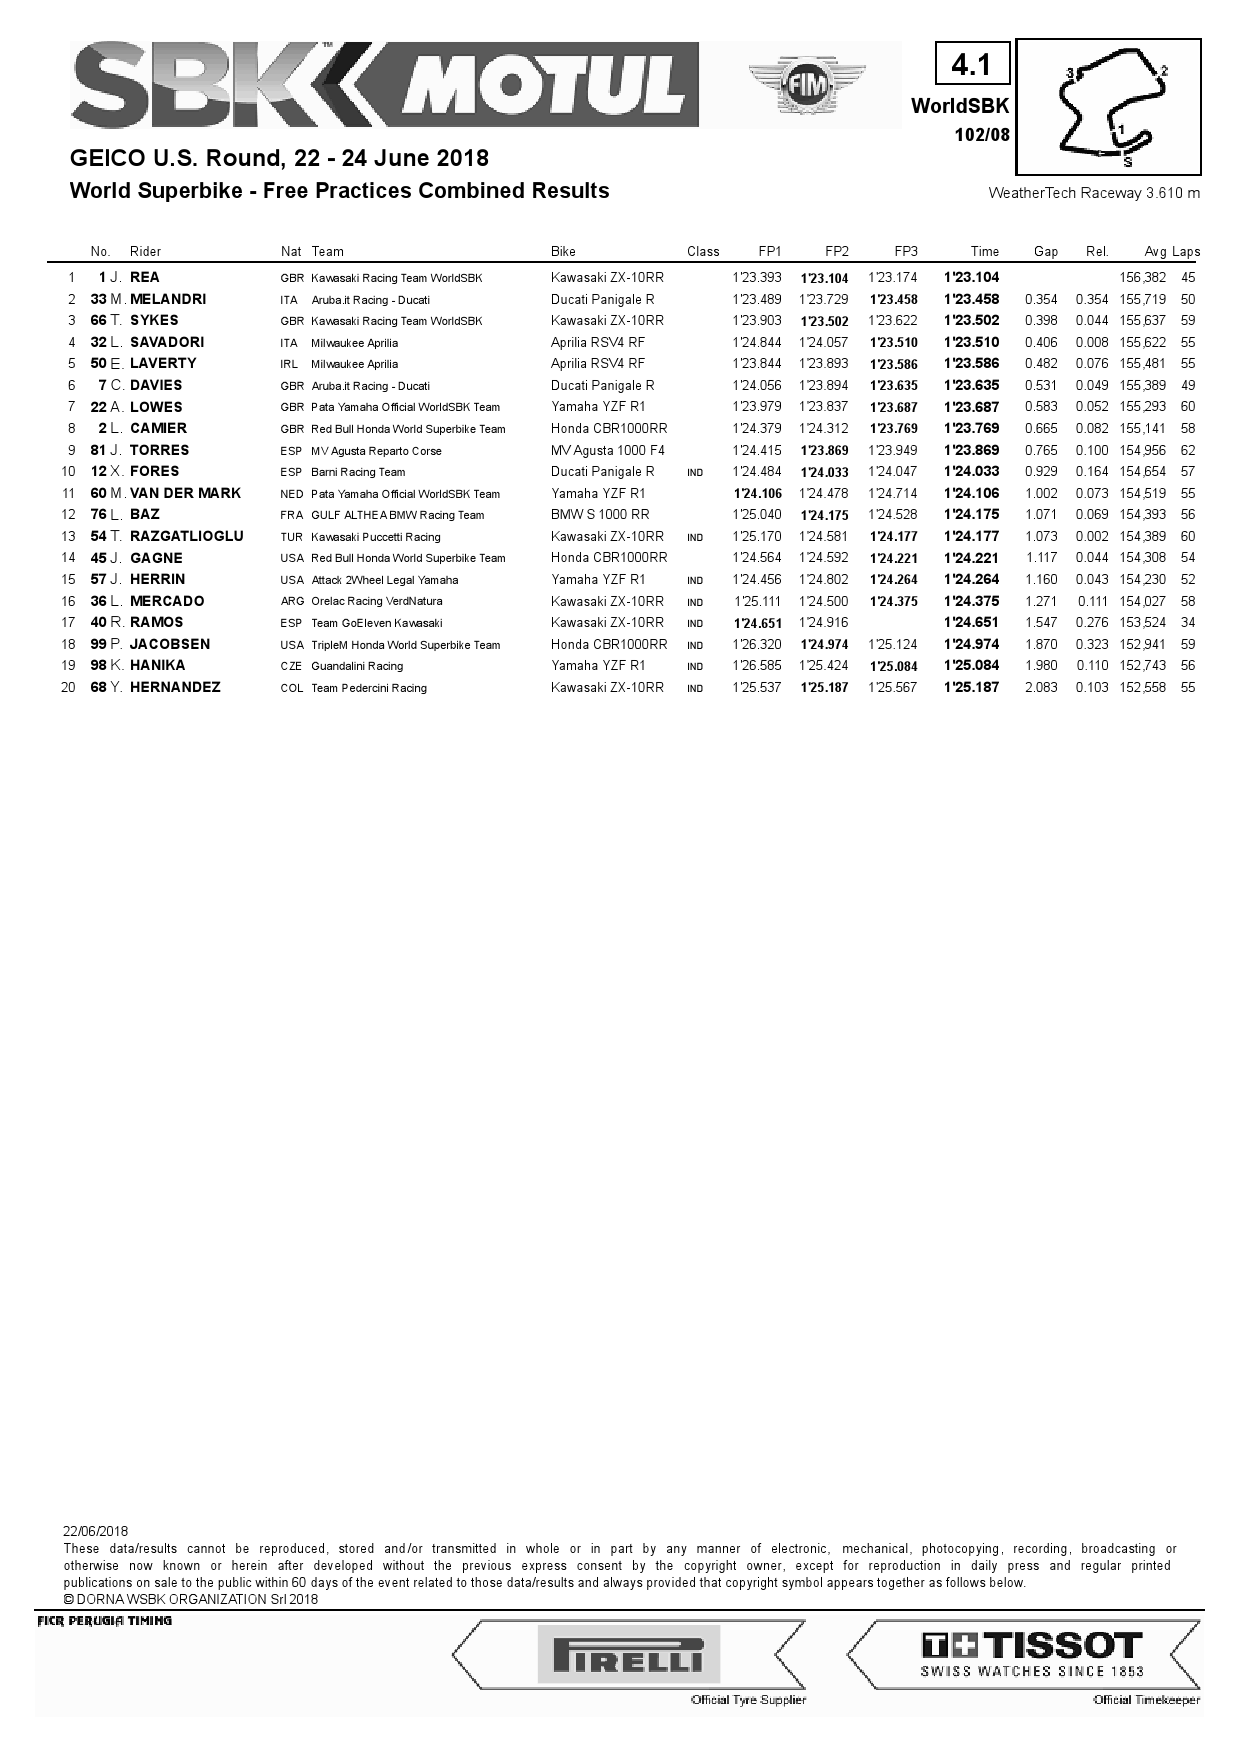 Объединенные результаты после FP3, Laguna Seca, World Superbike, 22/06/2018